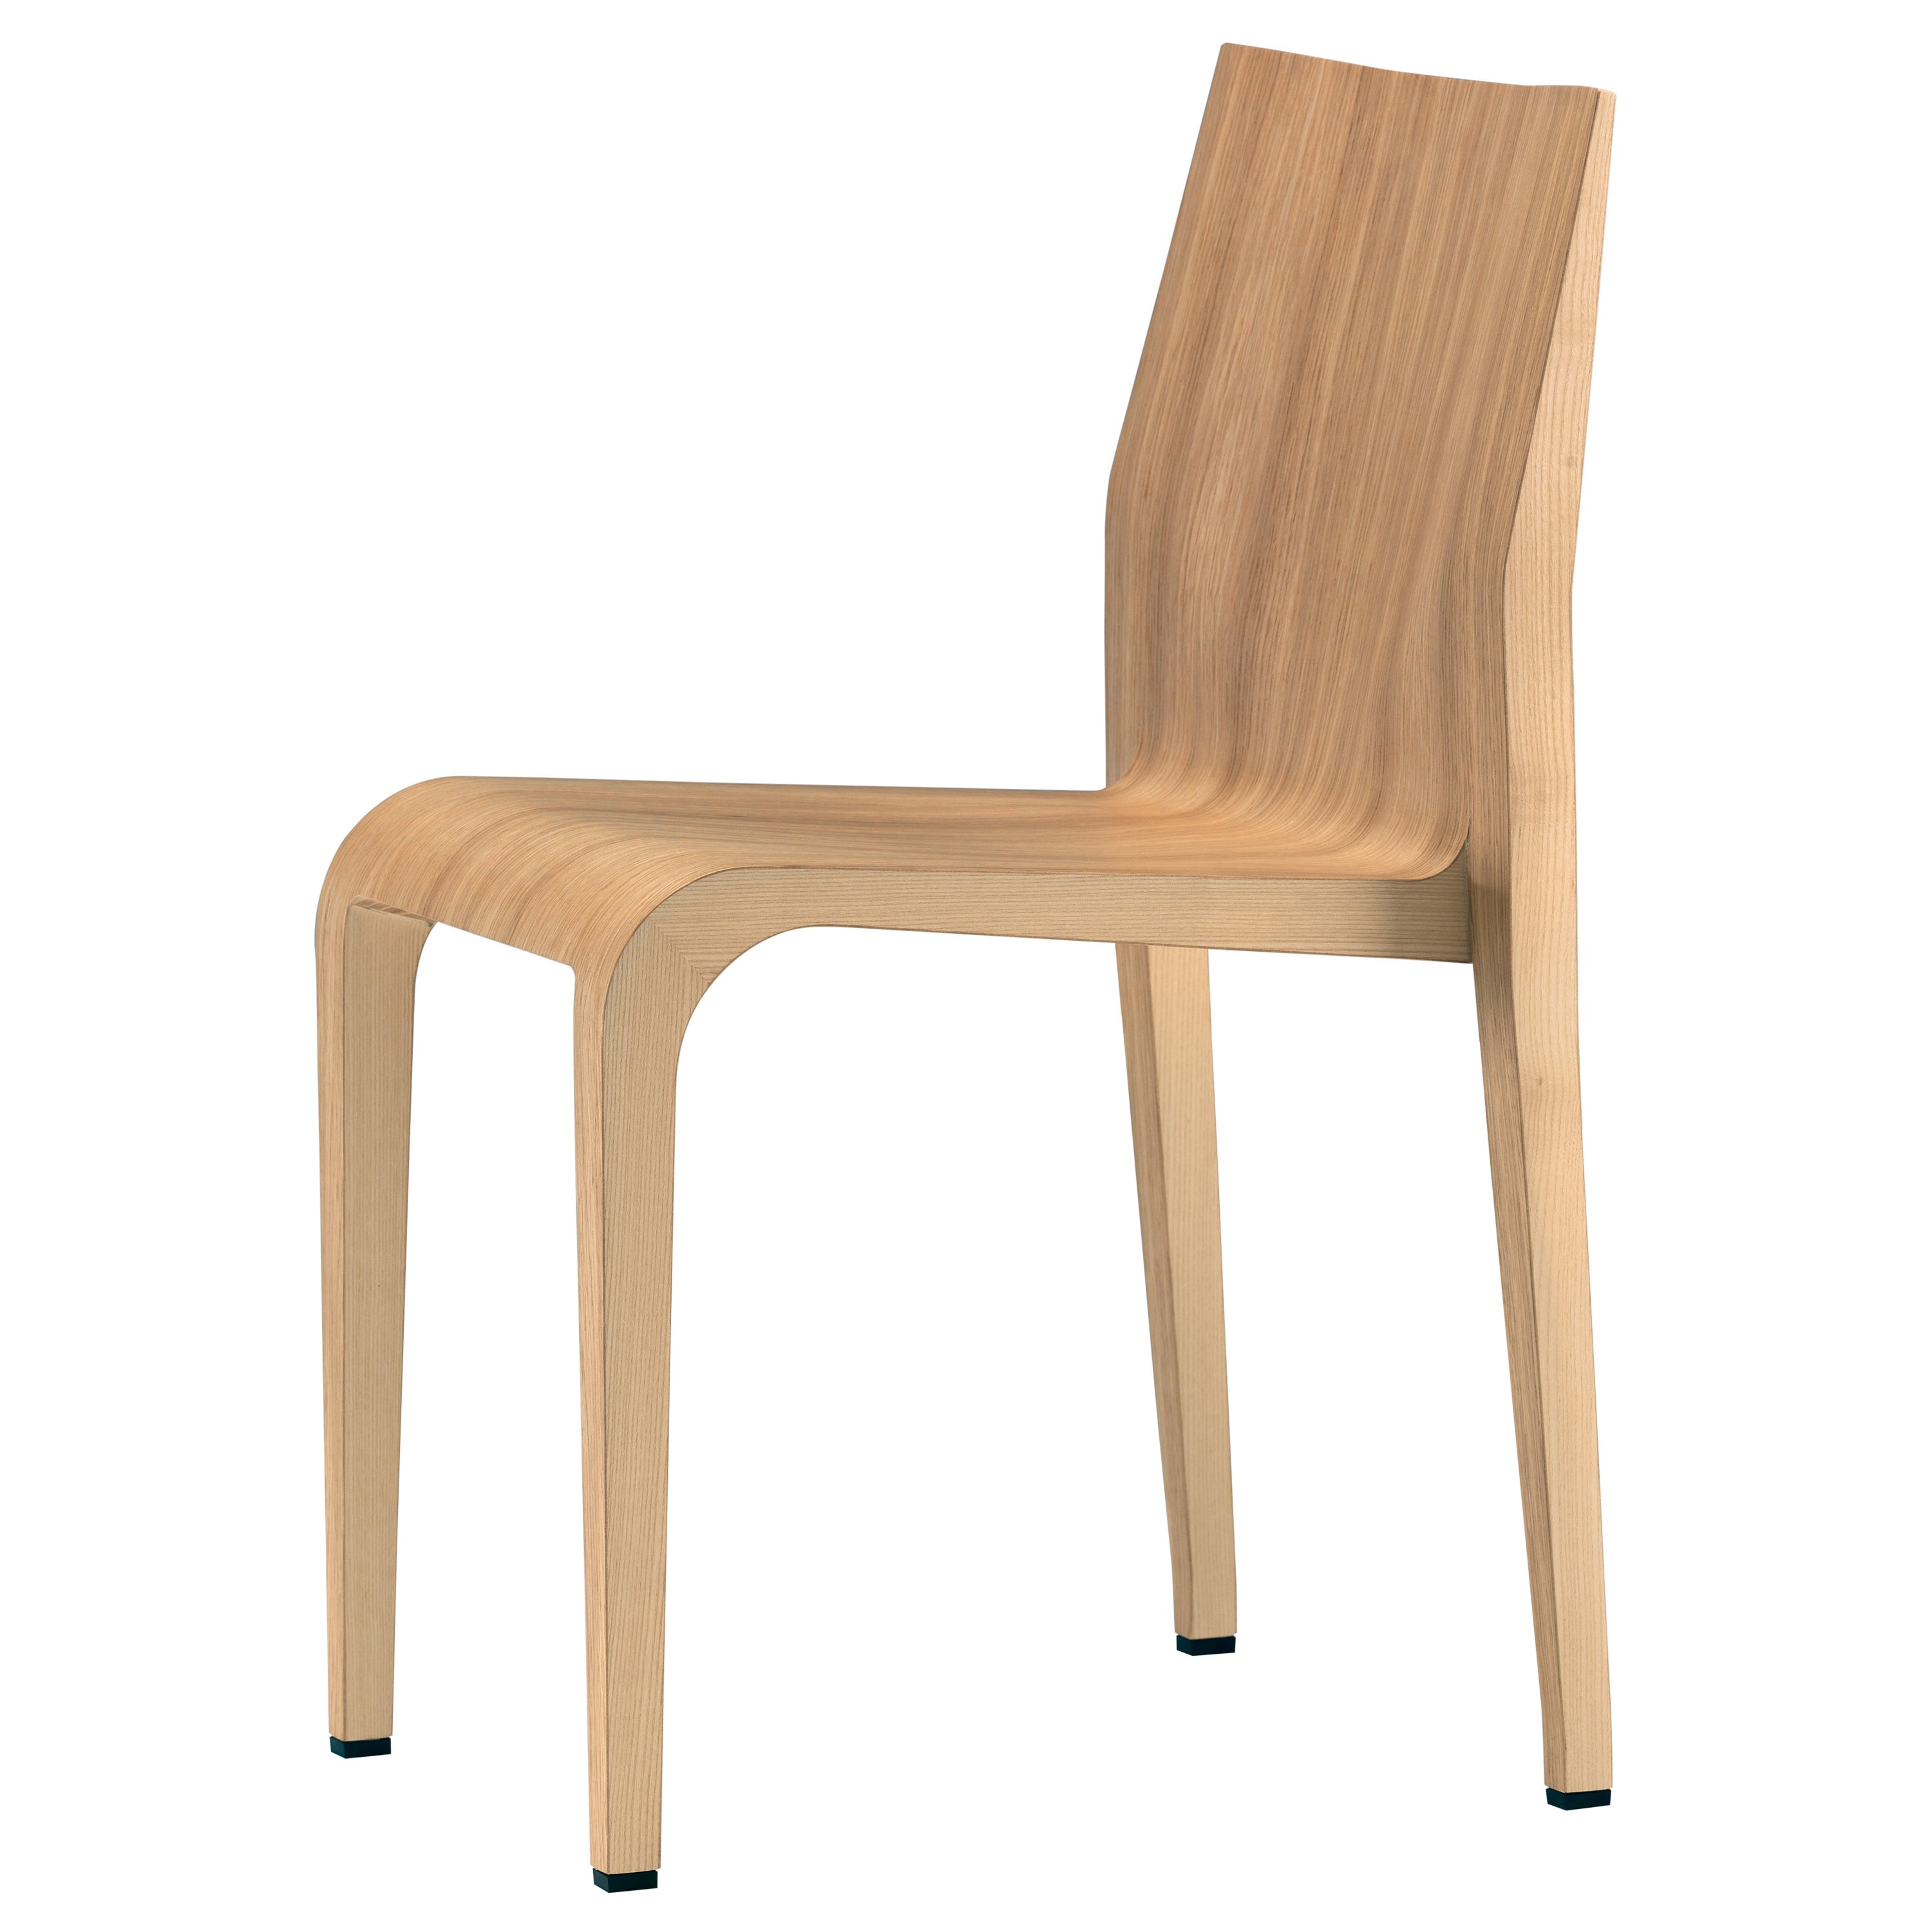 Alias 301 Laleggera Chair in Natural Oak Wood by Riccardo Blumer